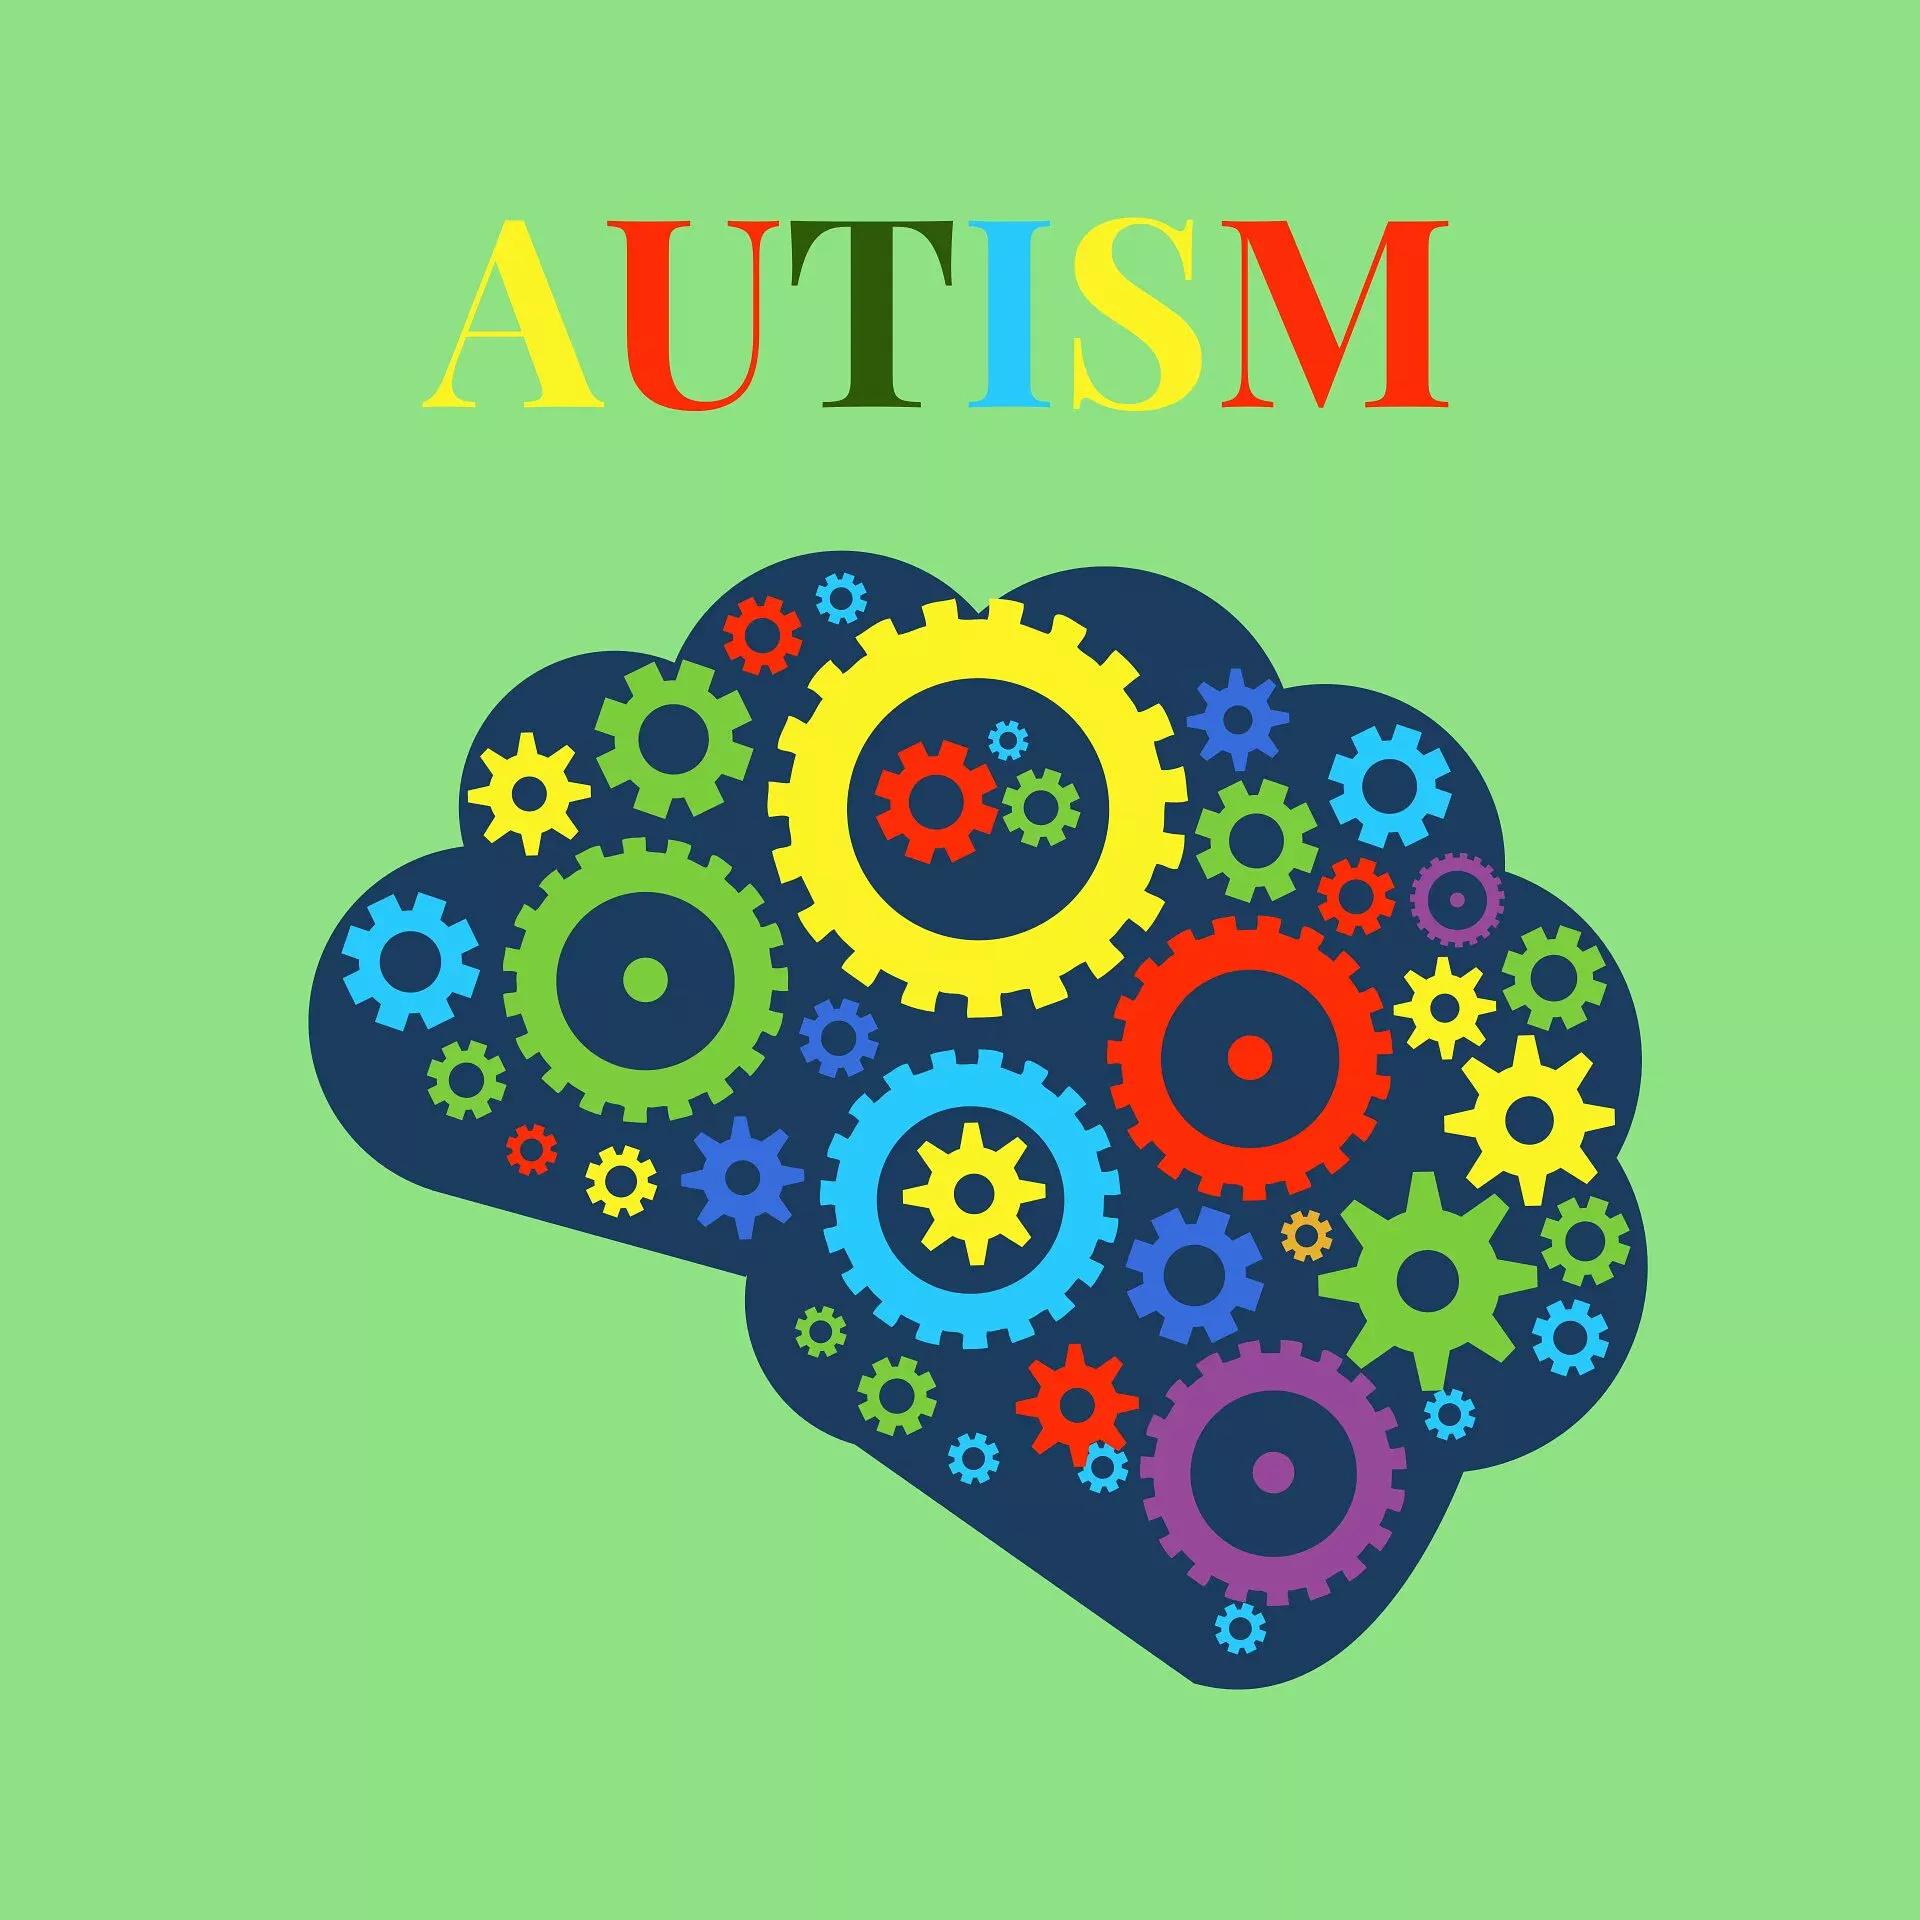 агрессия, что такое аутизм, поведение аутиста, симптомы аутизма, как жить аутисту, как жить с аутизмом, самоповреждения, социального взаимодействия, социум аутиста, аутист, аутизме